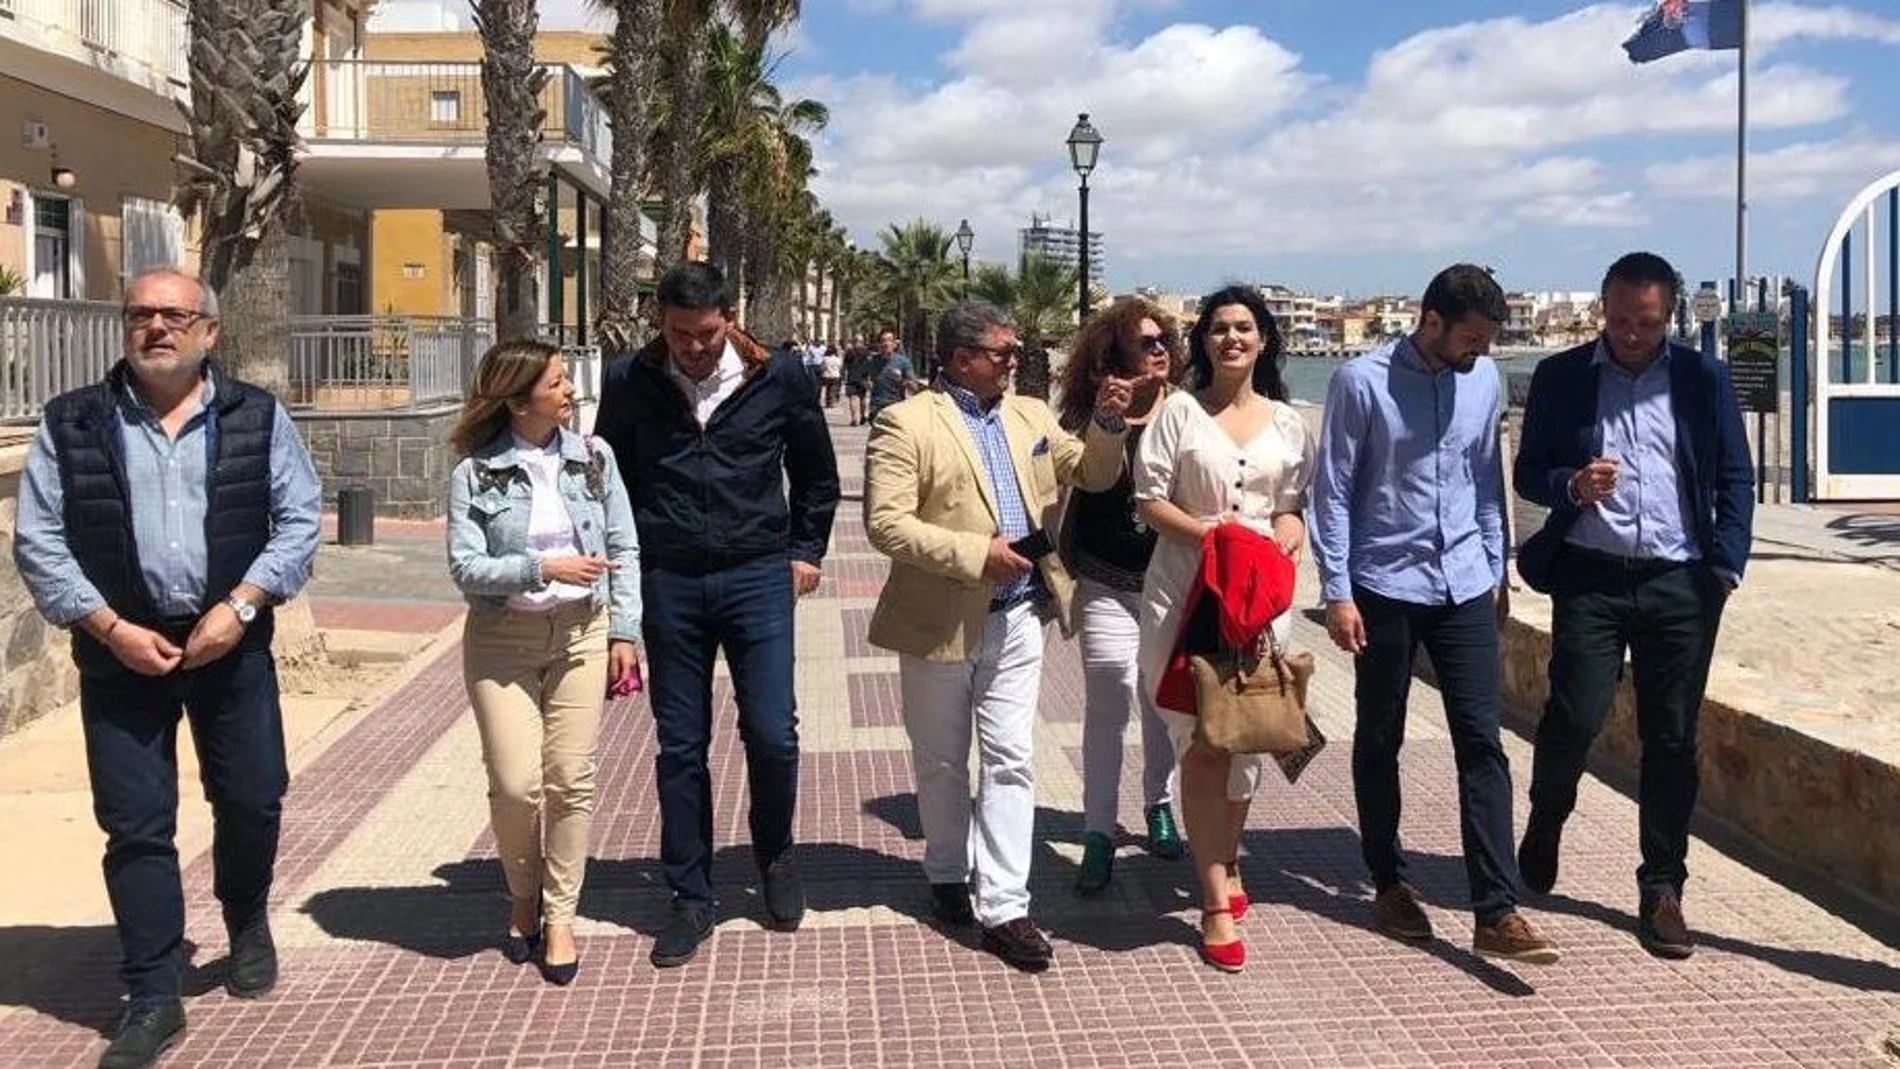 Los candidatos del PP a la Asamblea Regional, Joaquín Segado, Antonio Luego y Míriam Guardiola visitaron ayer Los Alcázares acompañados del candidato local, Nicolás Ruíz. LA RAZÓN